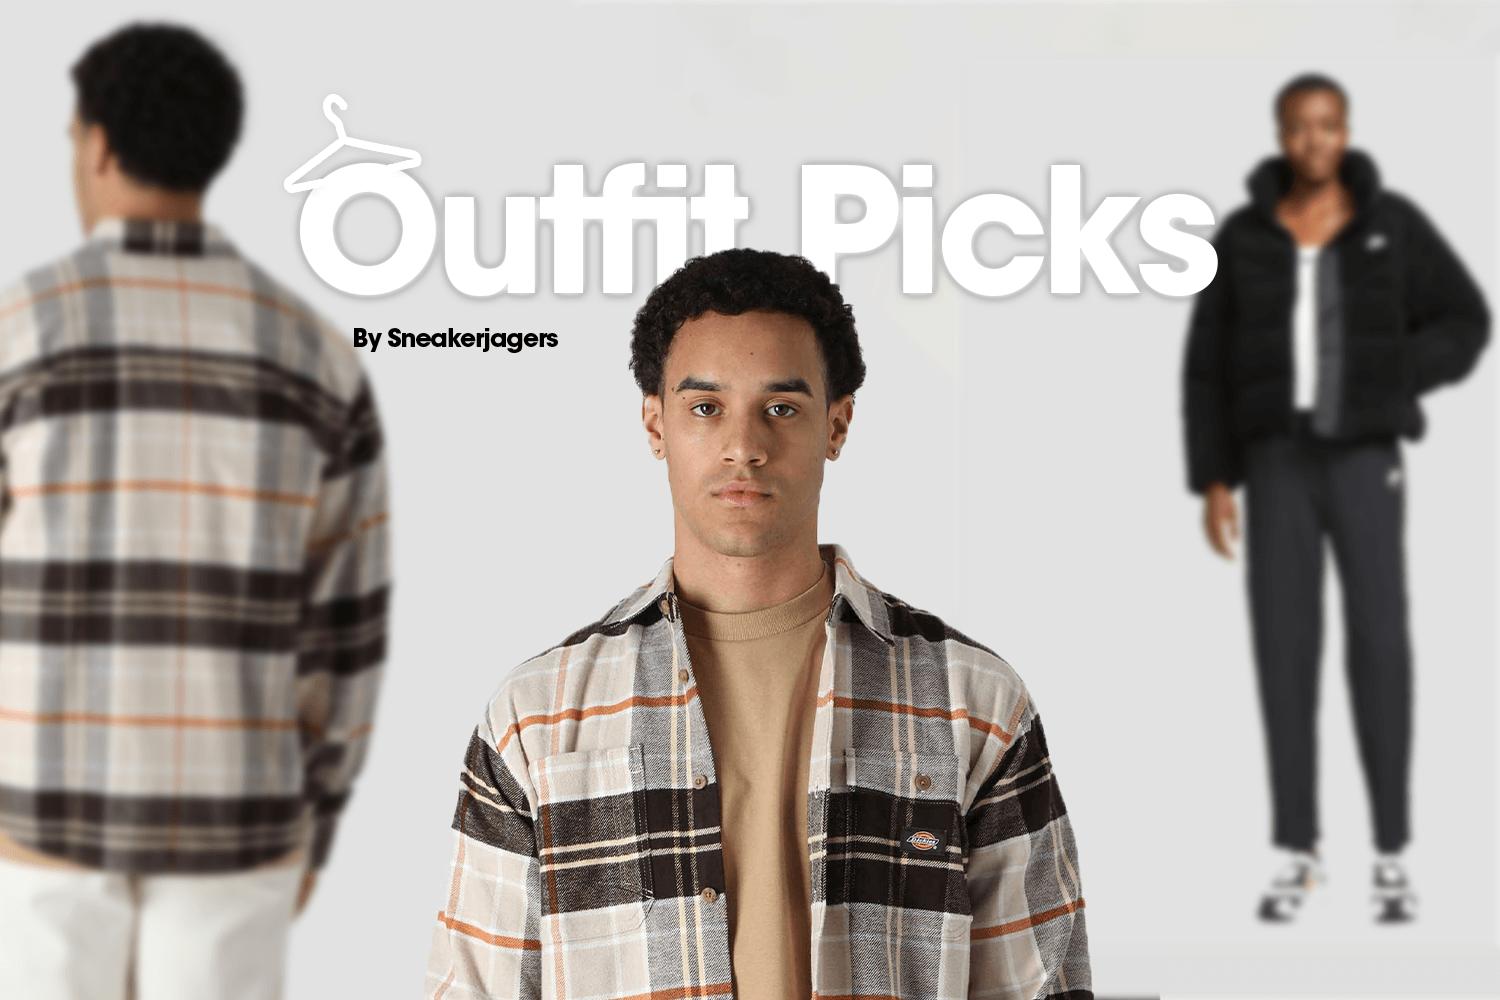 Outfit Picks by Sneakerjagers - week 7